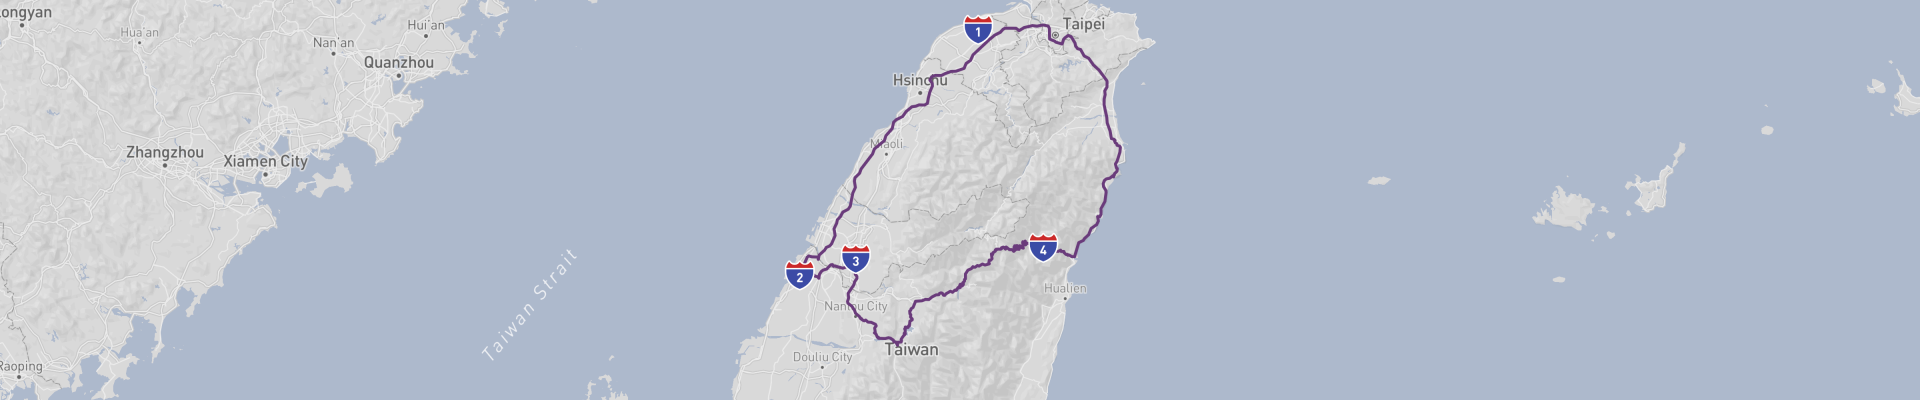 台湾ハイライト・ロードの旅